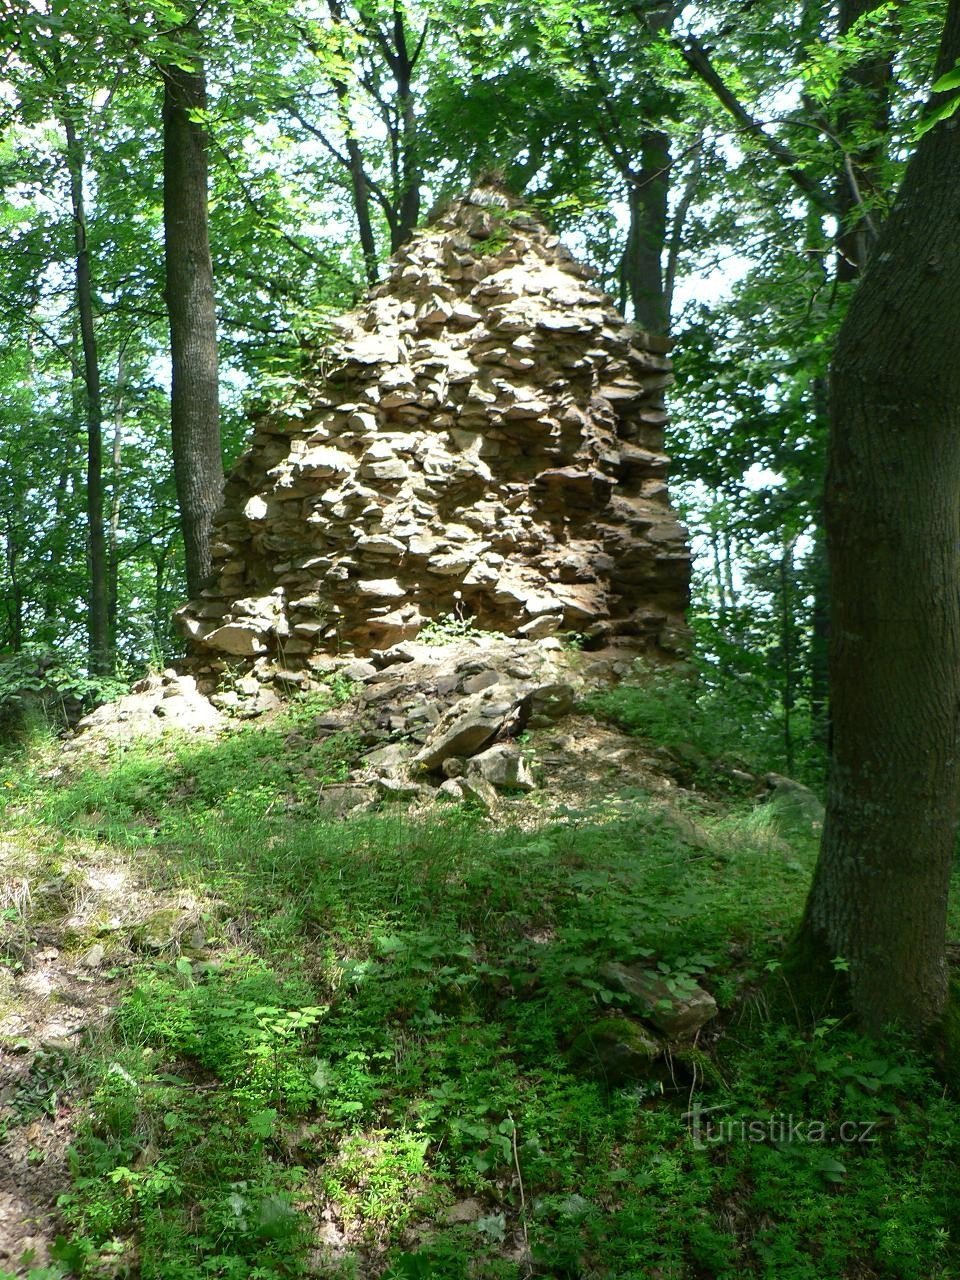 Pušperk, ο τοίχος στην είσοδο του κάστρου